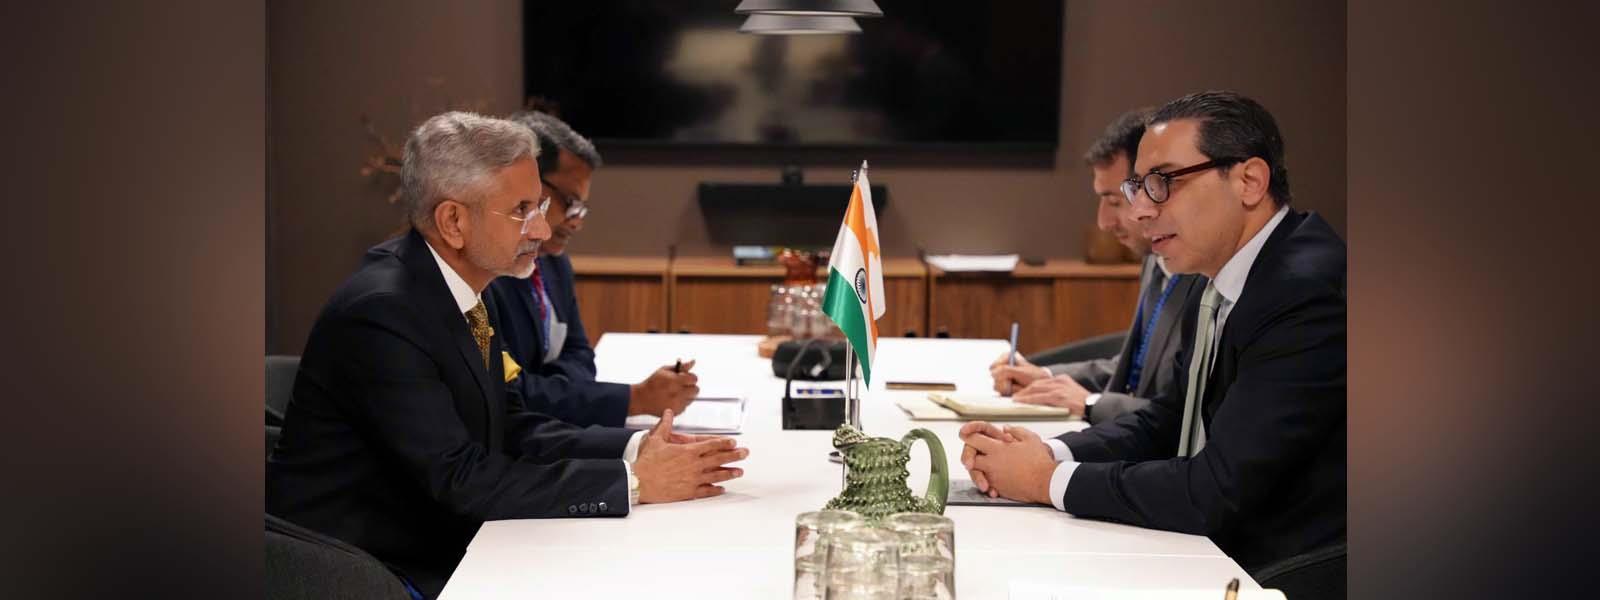 विदेश मंत्री डॉ. एस. जयशंकर ने स्टॉकहोम, स्वीडन में साइप्रस के विदेश मंत्री महामहिम श्री. कॉन्स्टेंटिनोस कोम्बोस से मुलाकात की